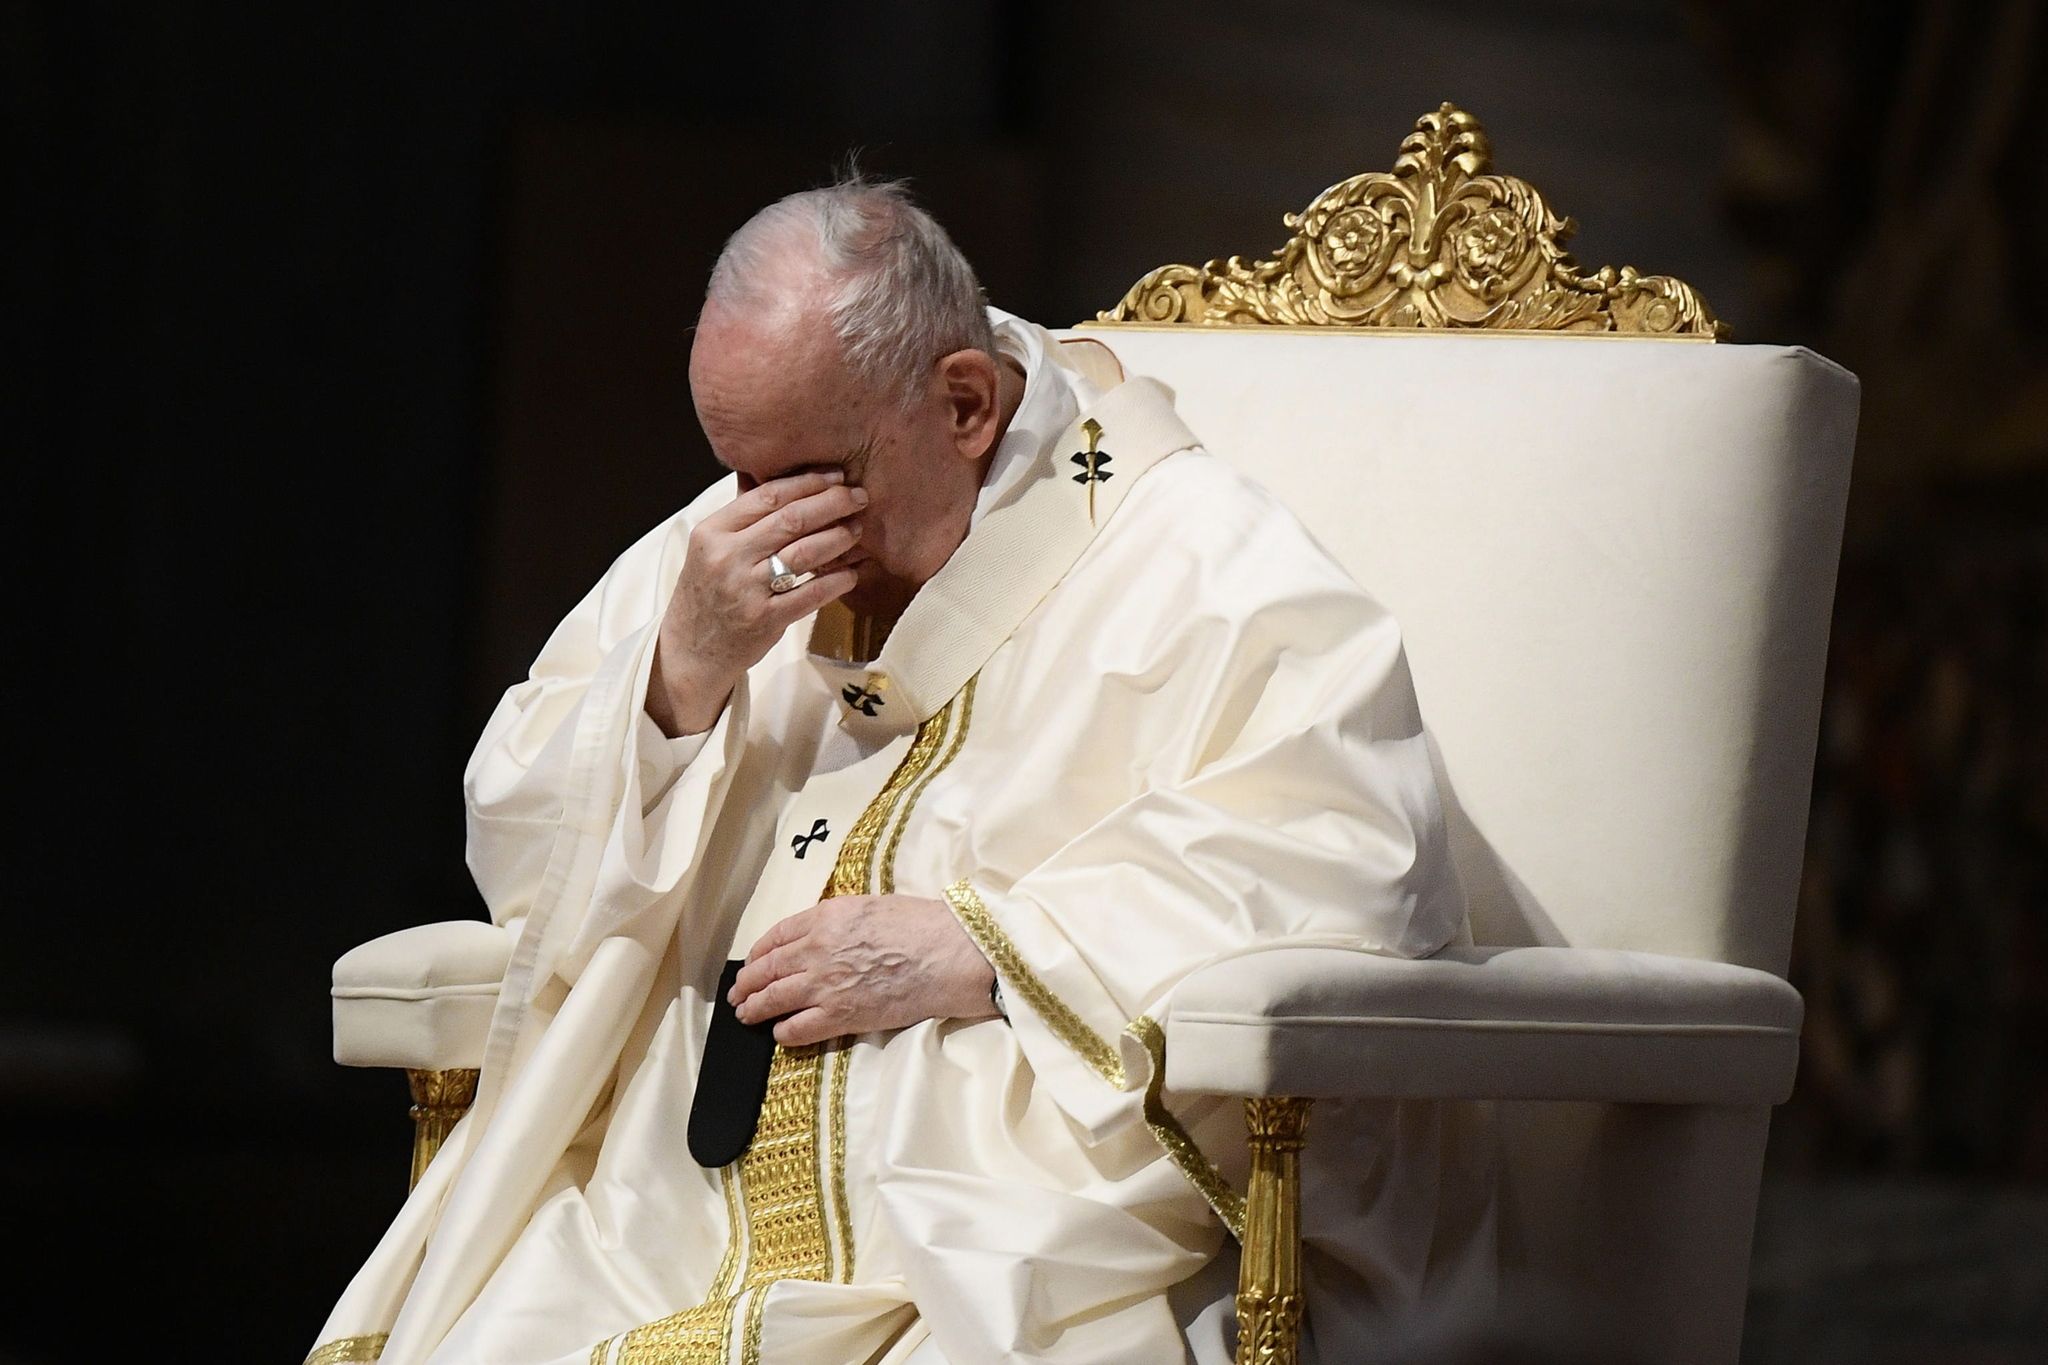 Pédocriminalité en France: le pape François exprime «sa honte»